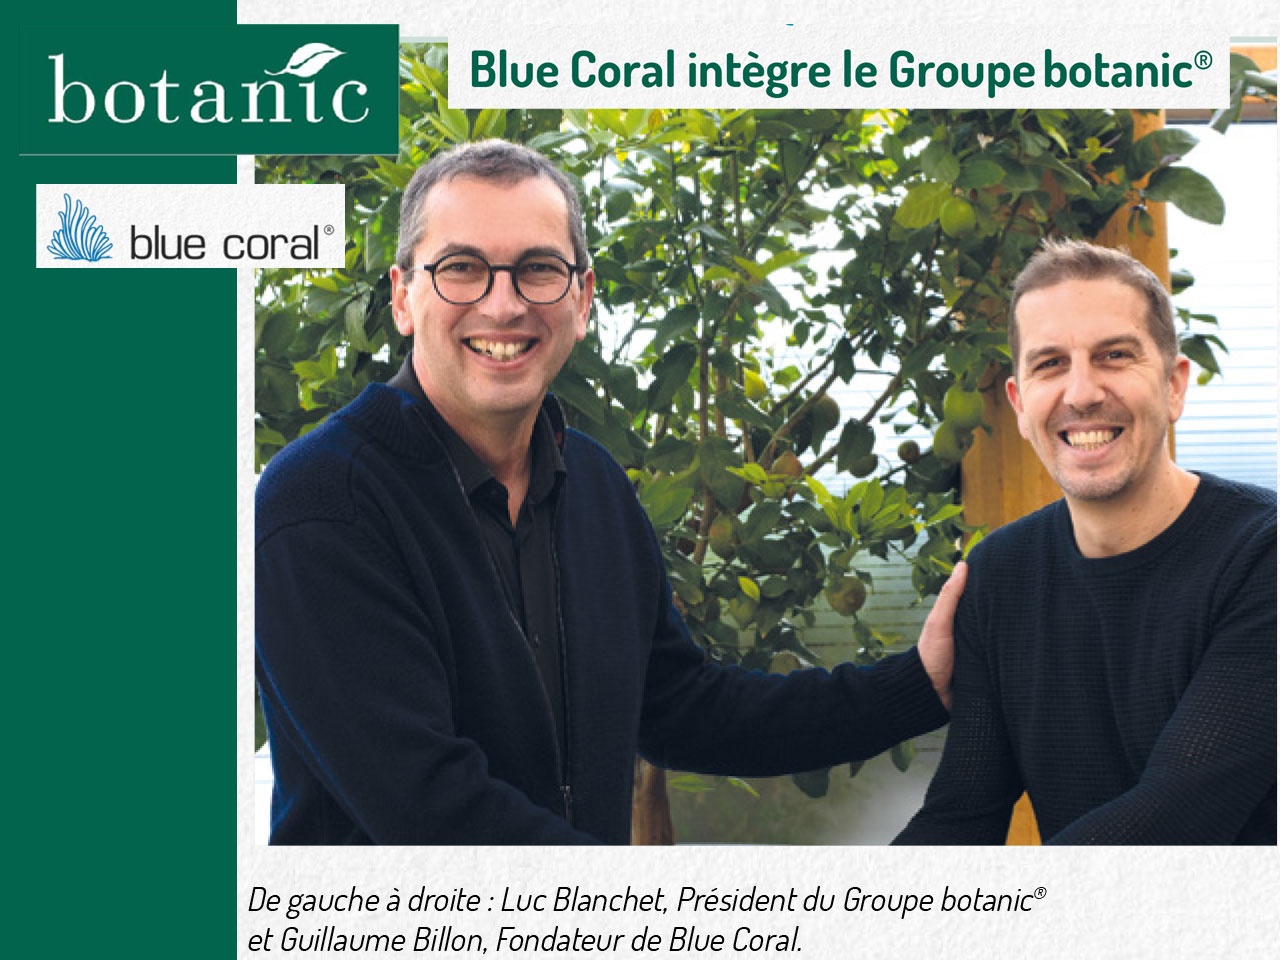 Blue Coral intègre le Groupebotanic®